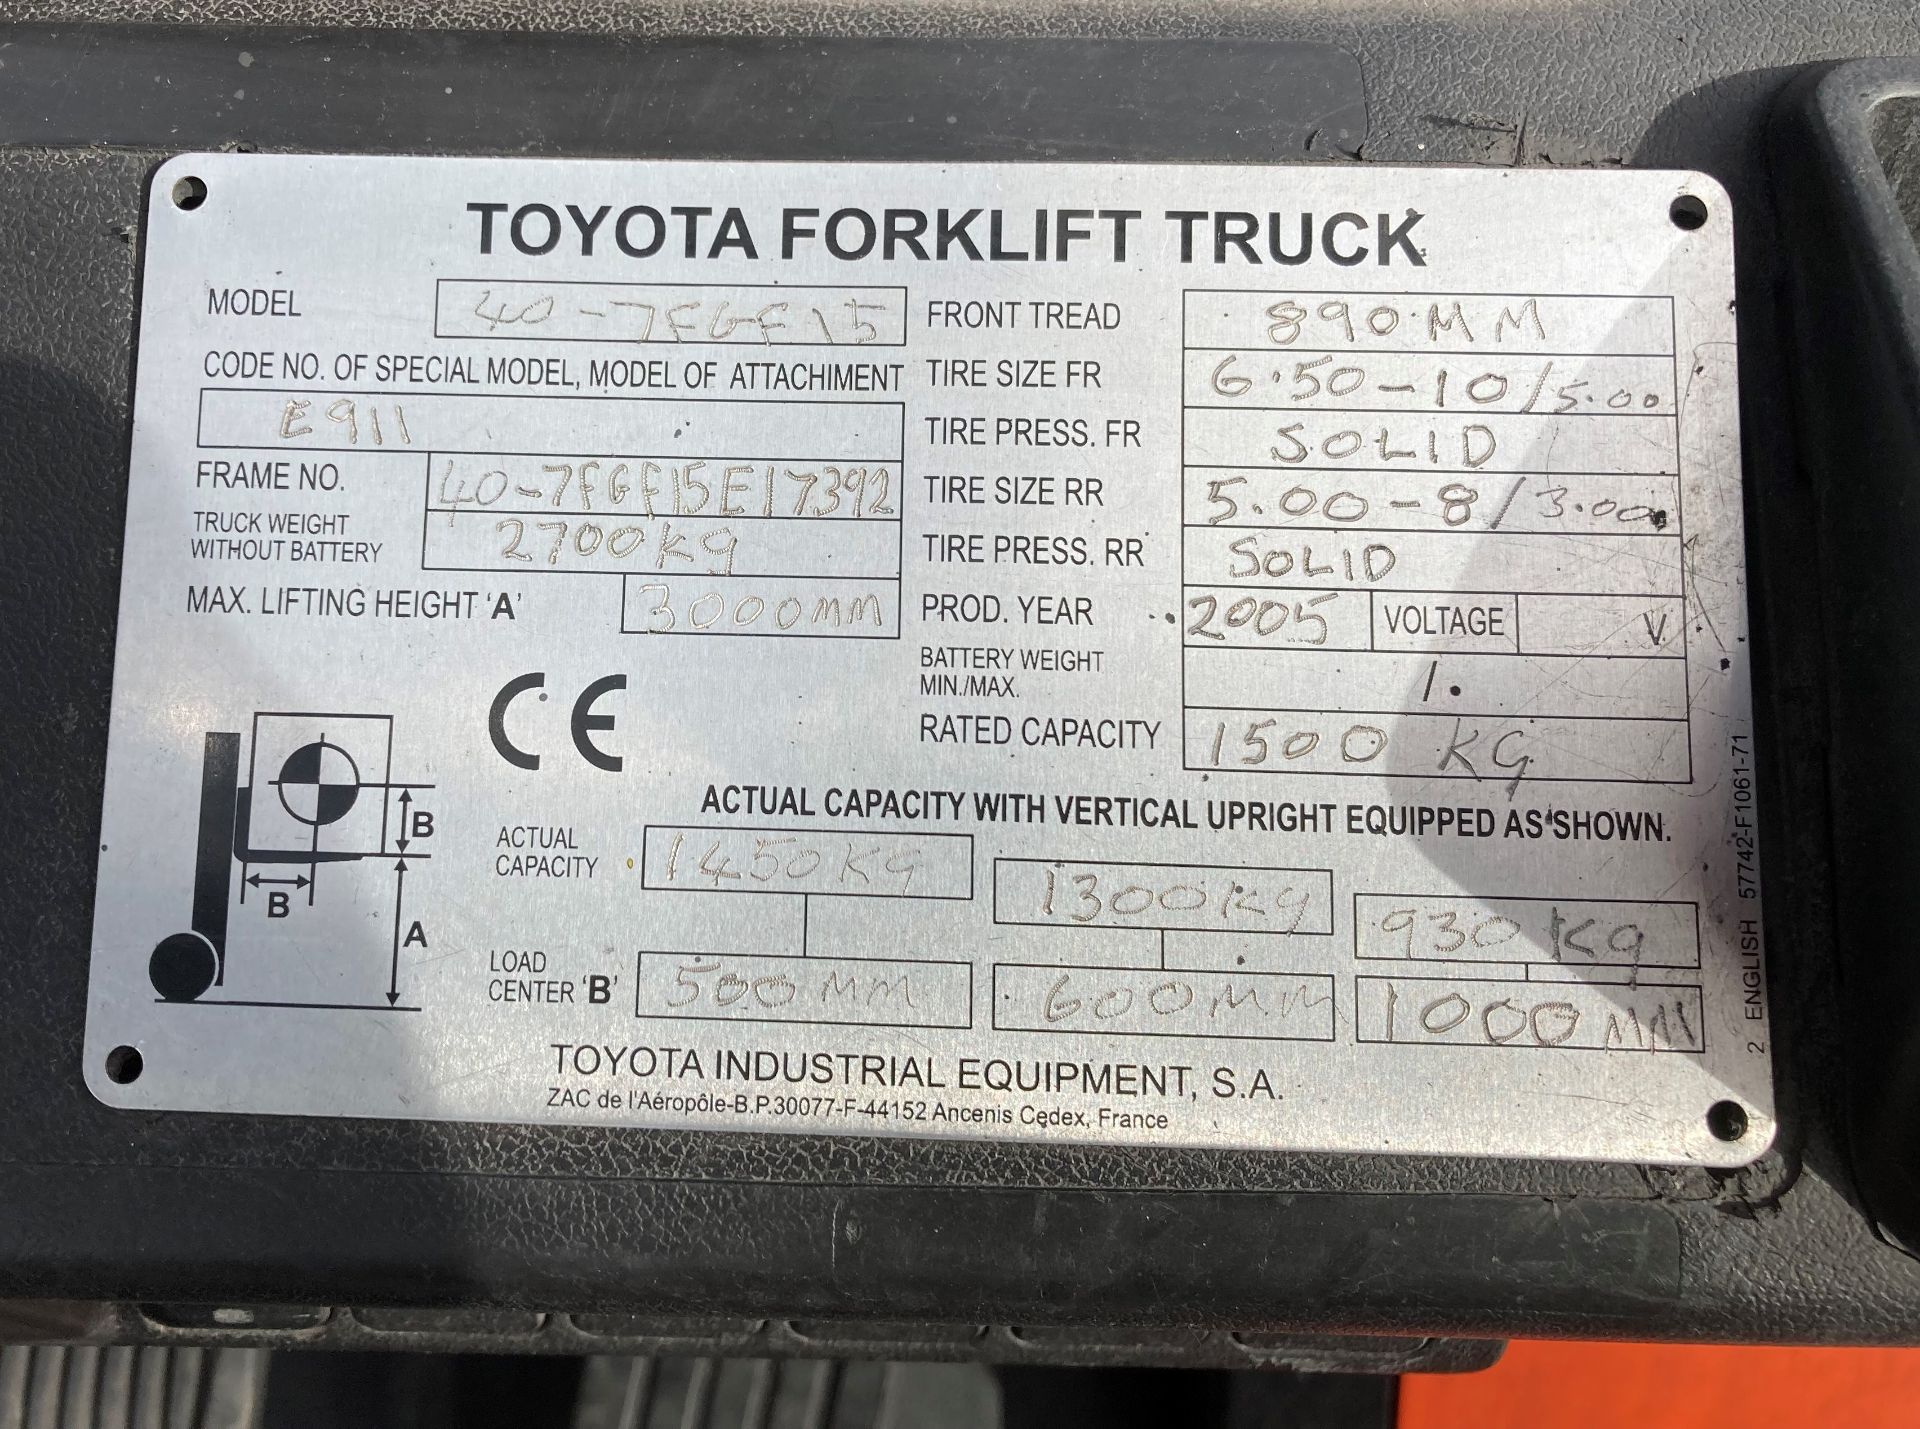 TOYOTA 1.5 tonne gas forklift truck - side shift - orange/grey. - Image 5 of 8